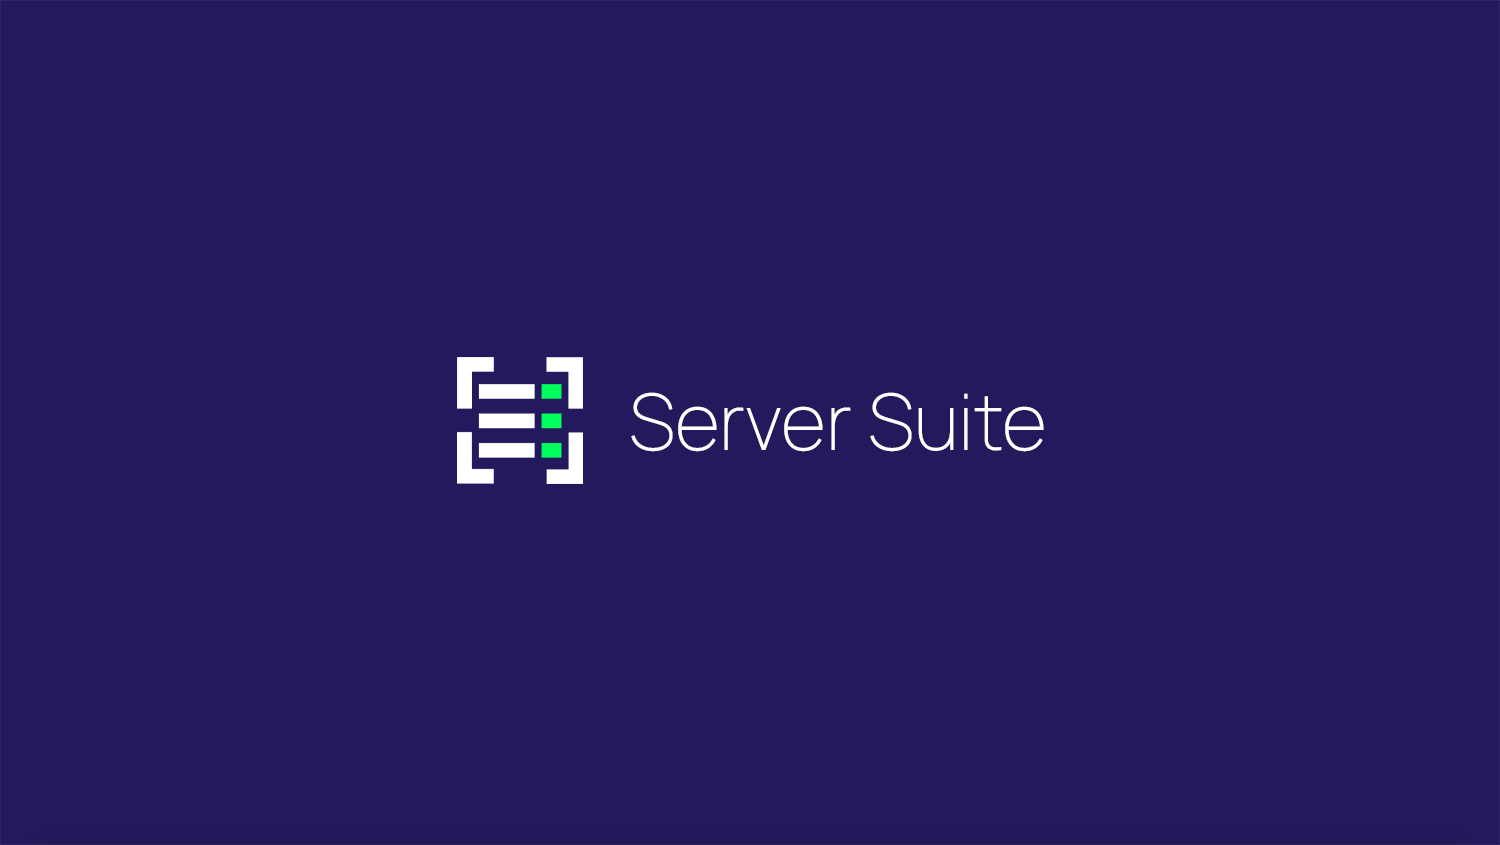 Server Suite Demo